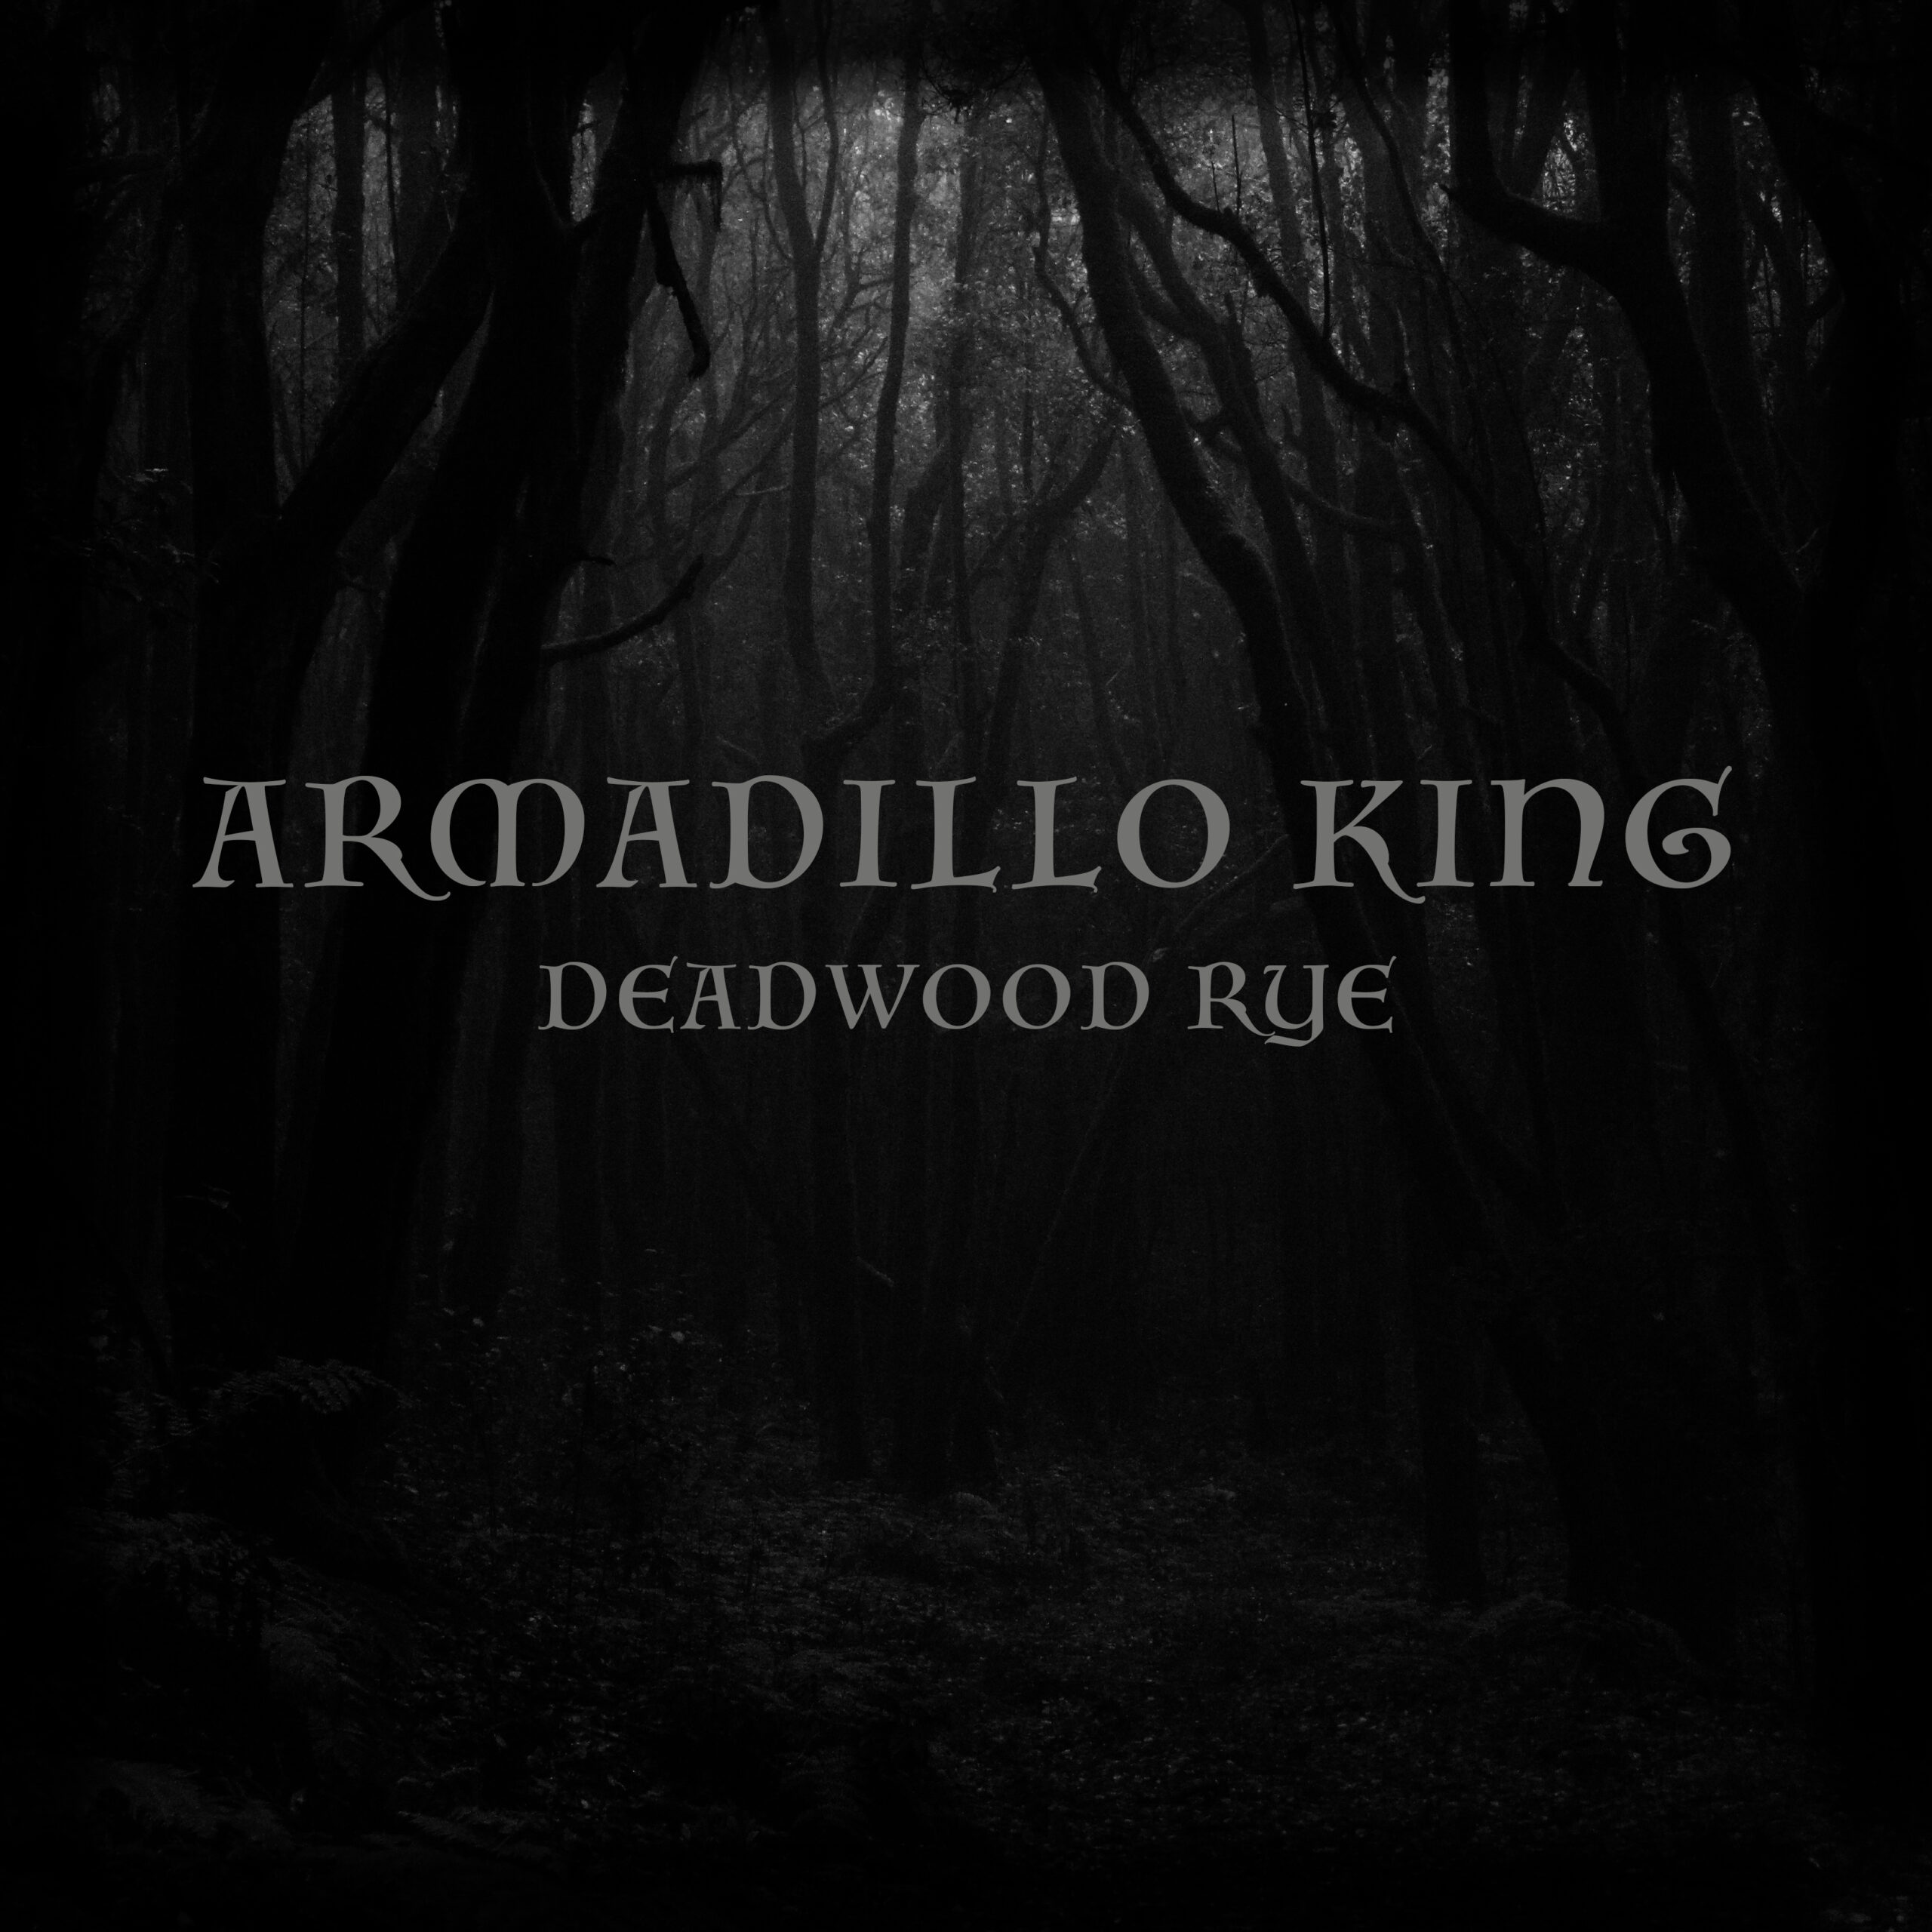 Deadwood rye - single cover